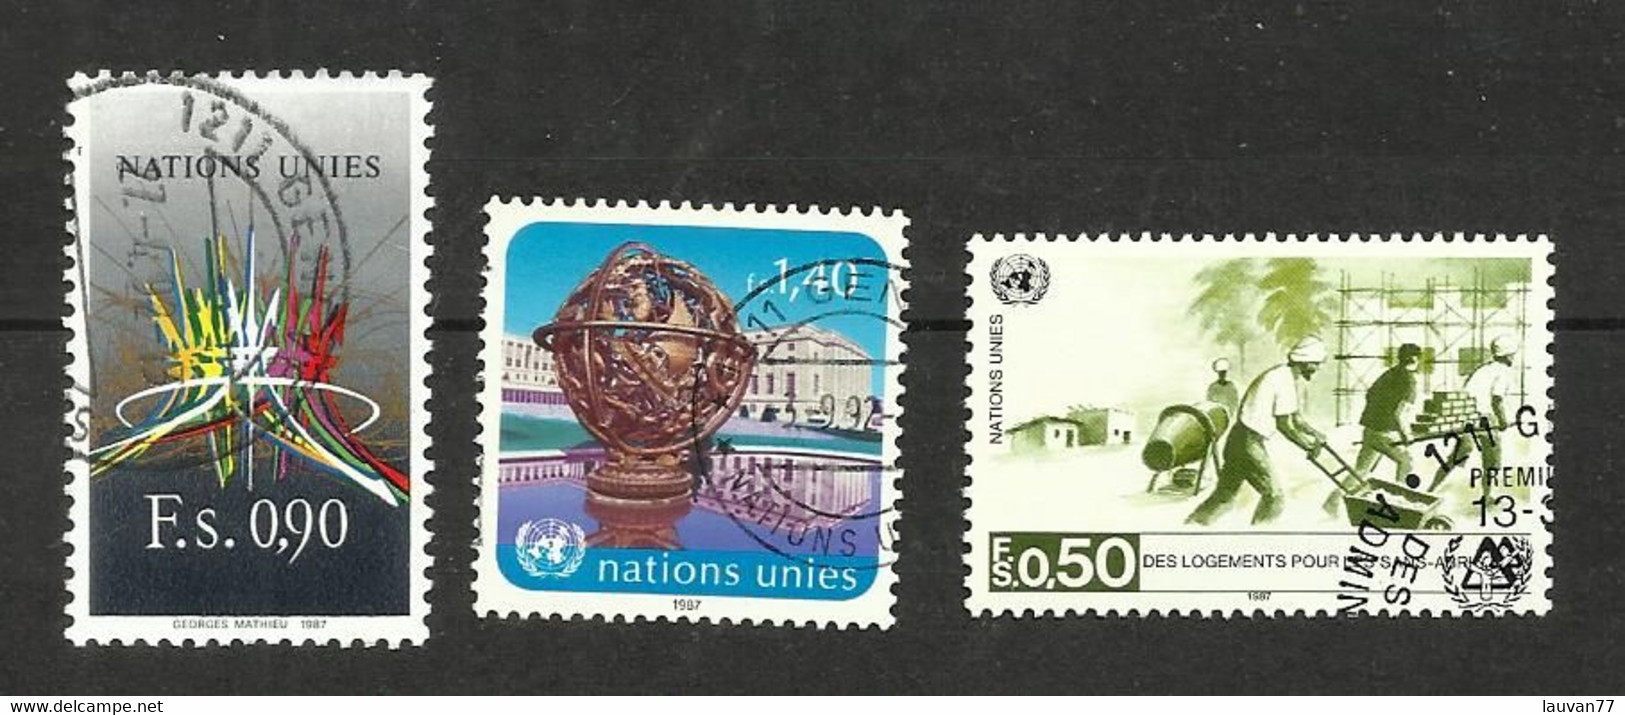 Nations Unies (Genève) N°152 à 154 Cote 4.50€ - Oblitérés